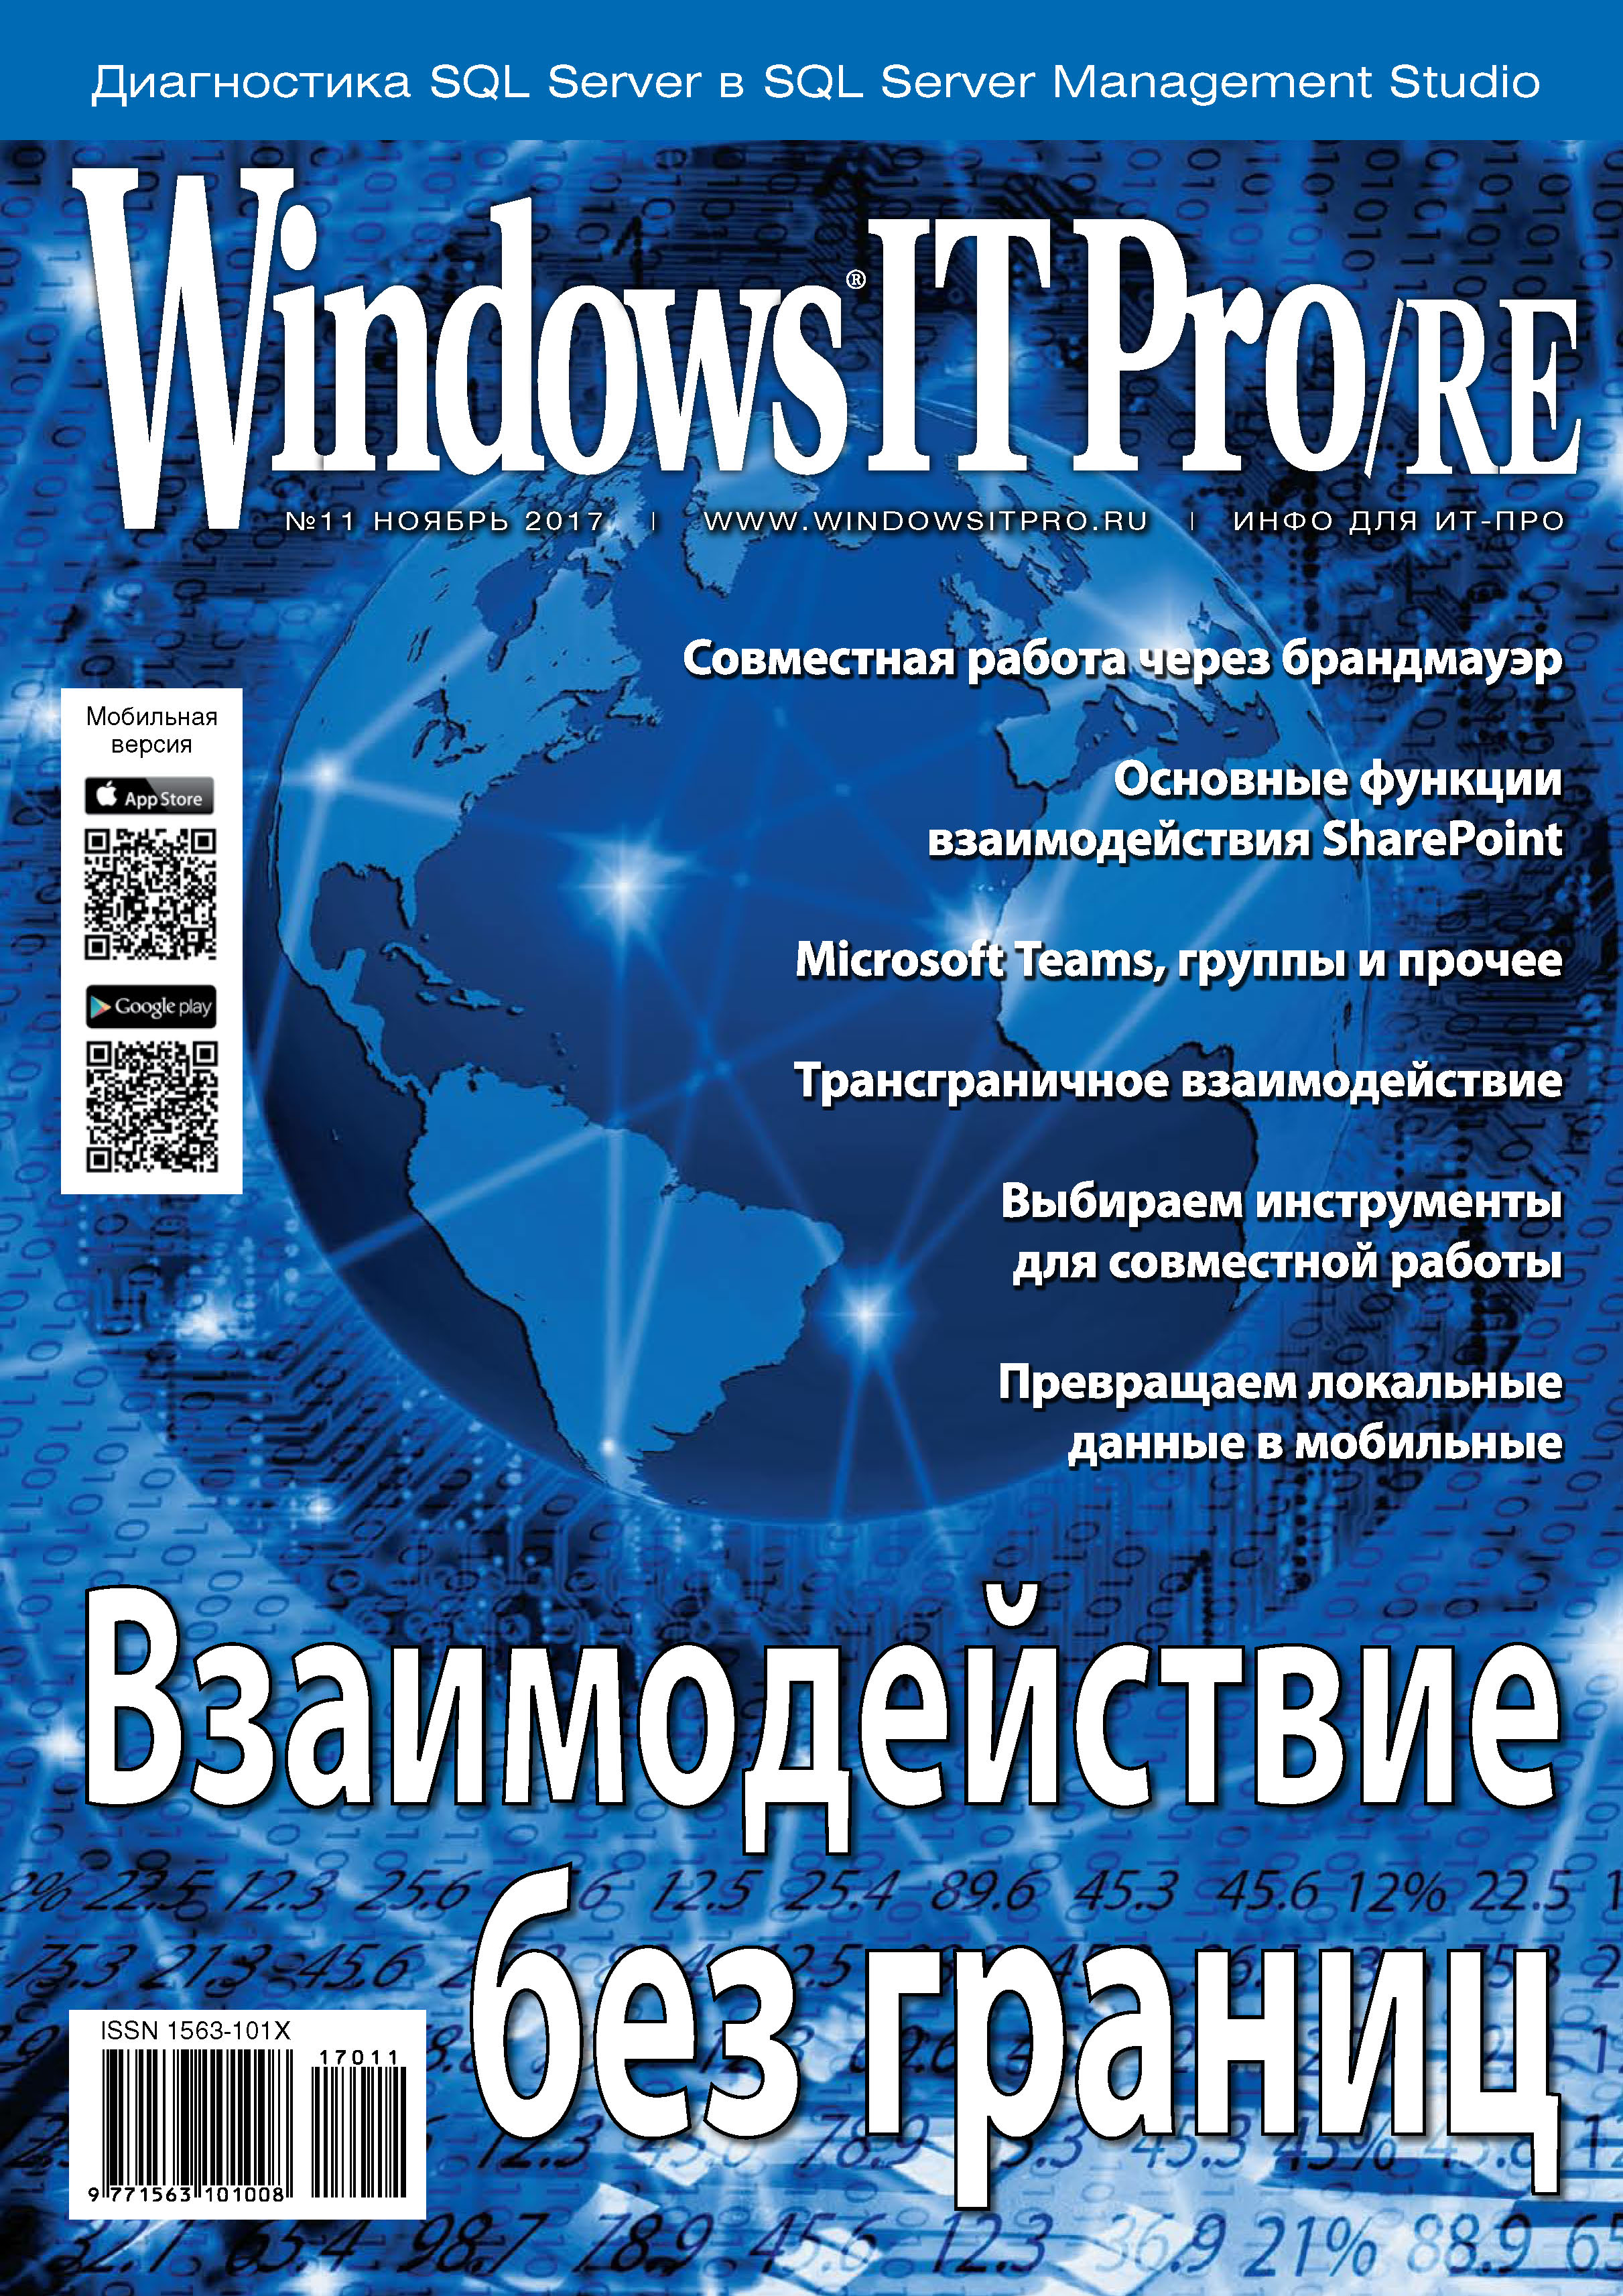 Книга Windows IT Pro 2017 Windows IT Pro/RE №11/2017 созданная Открытые системы может относится к жанру компьютерные журналы, ОС и сети, программы. Стоимость электронной книги Windows IT Pro/RE №11/2017 с идентификатором 27427406 составляет 484.00 руб.